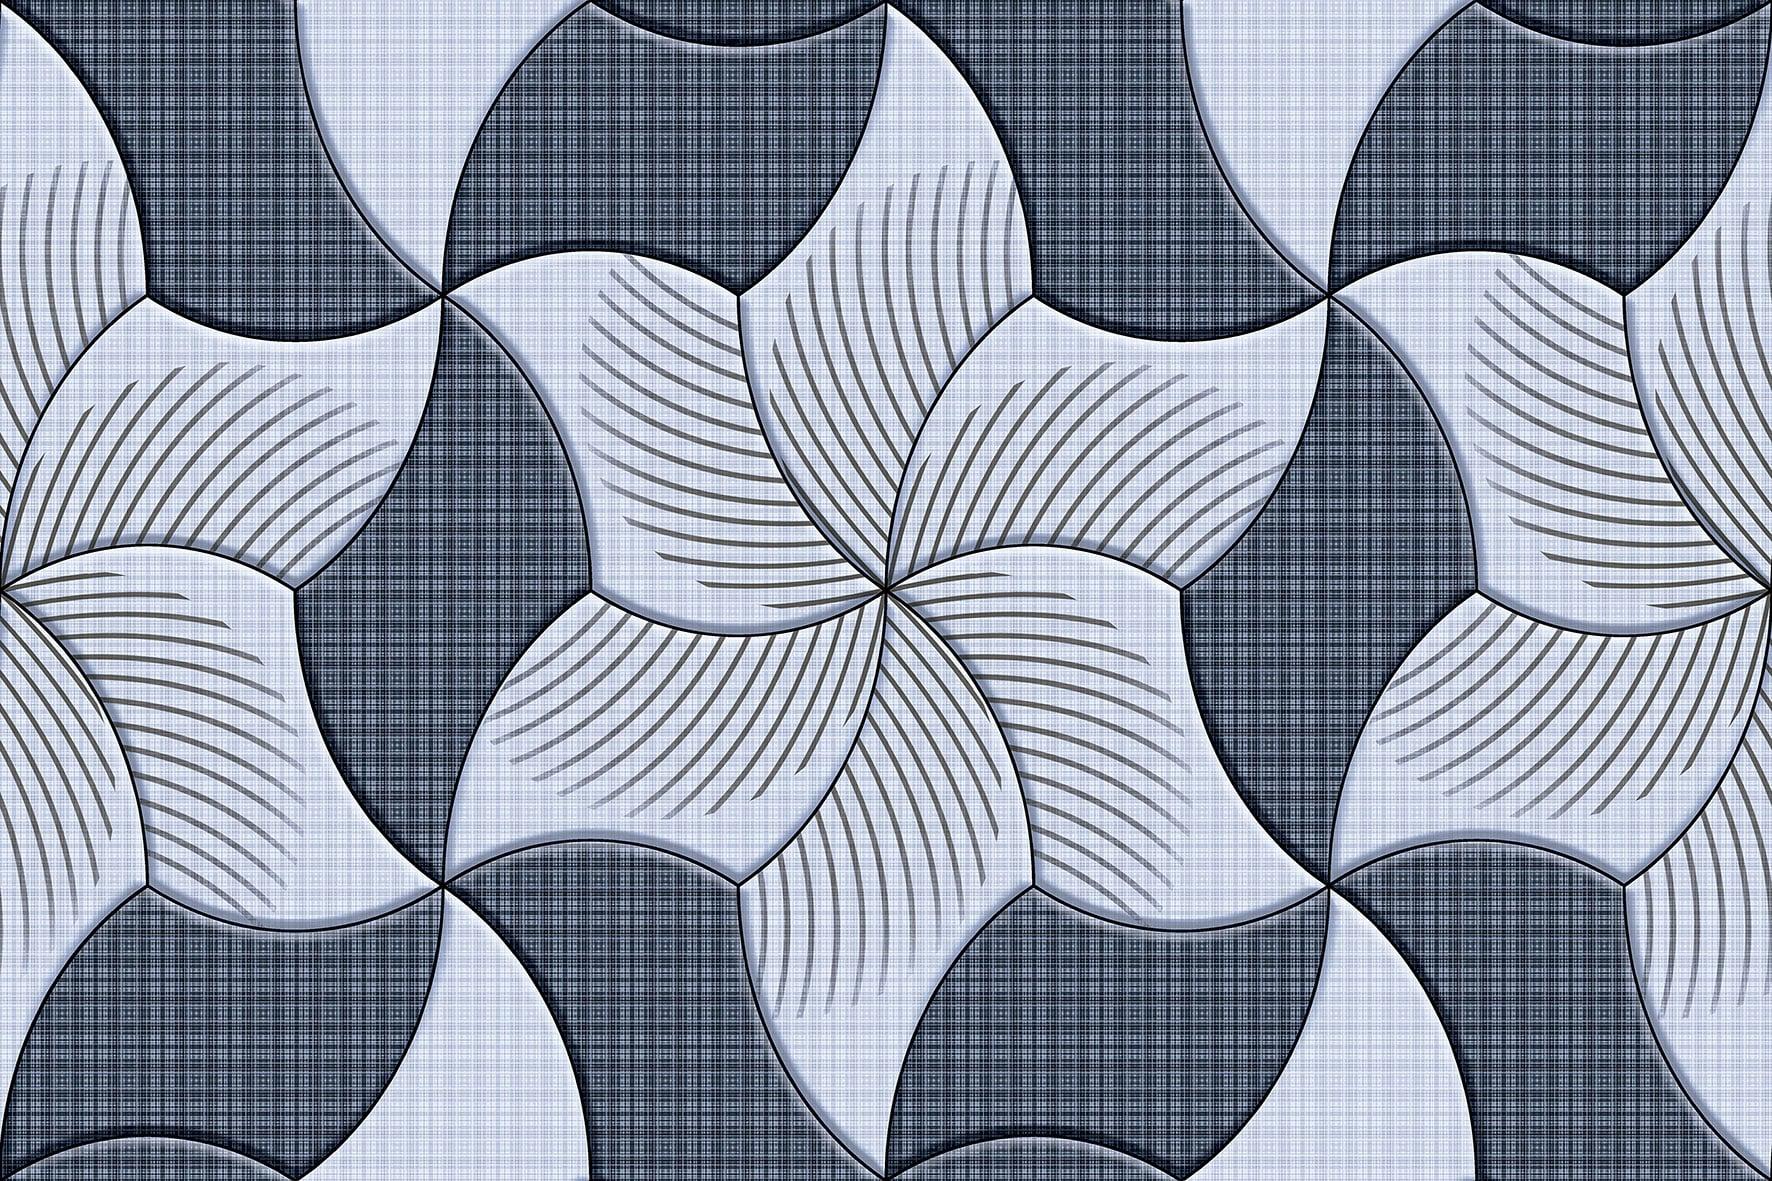 Flower Tiles for Bathroom Tiles, Kitchen Tiles